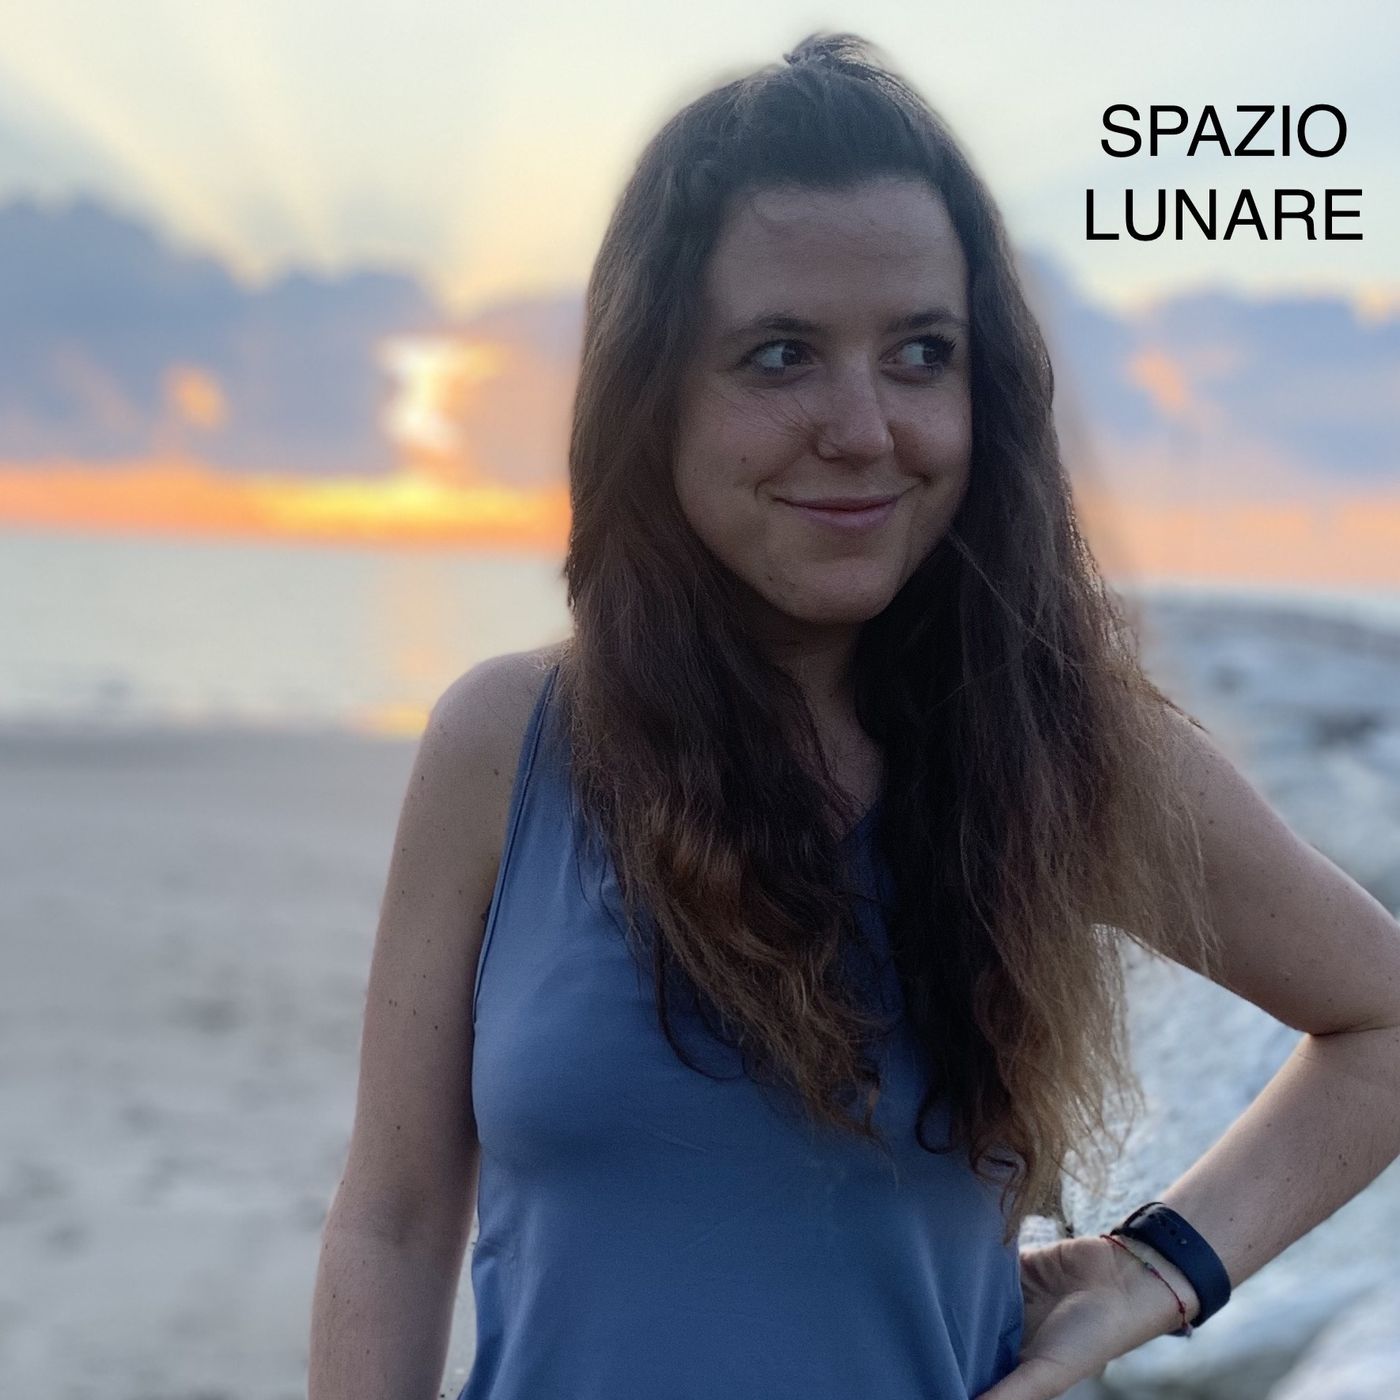 SPAZIO LUNARE EP. 212 - 27 ANNI E SINGLE, HO PAURA DI RIMANERE SOLA?